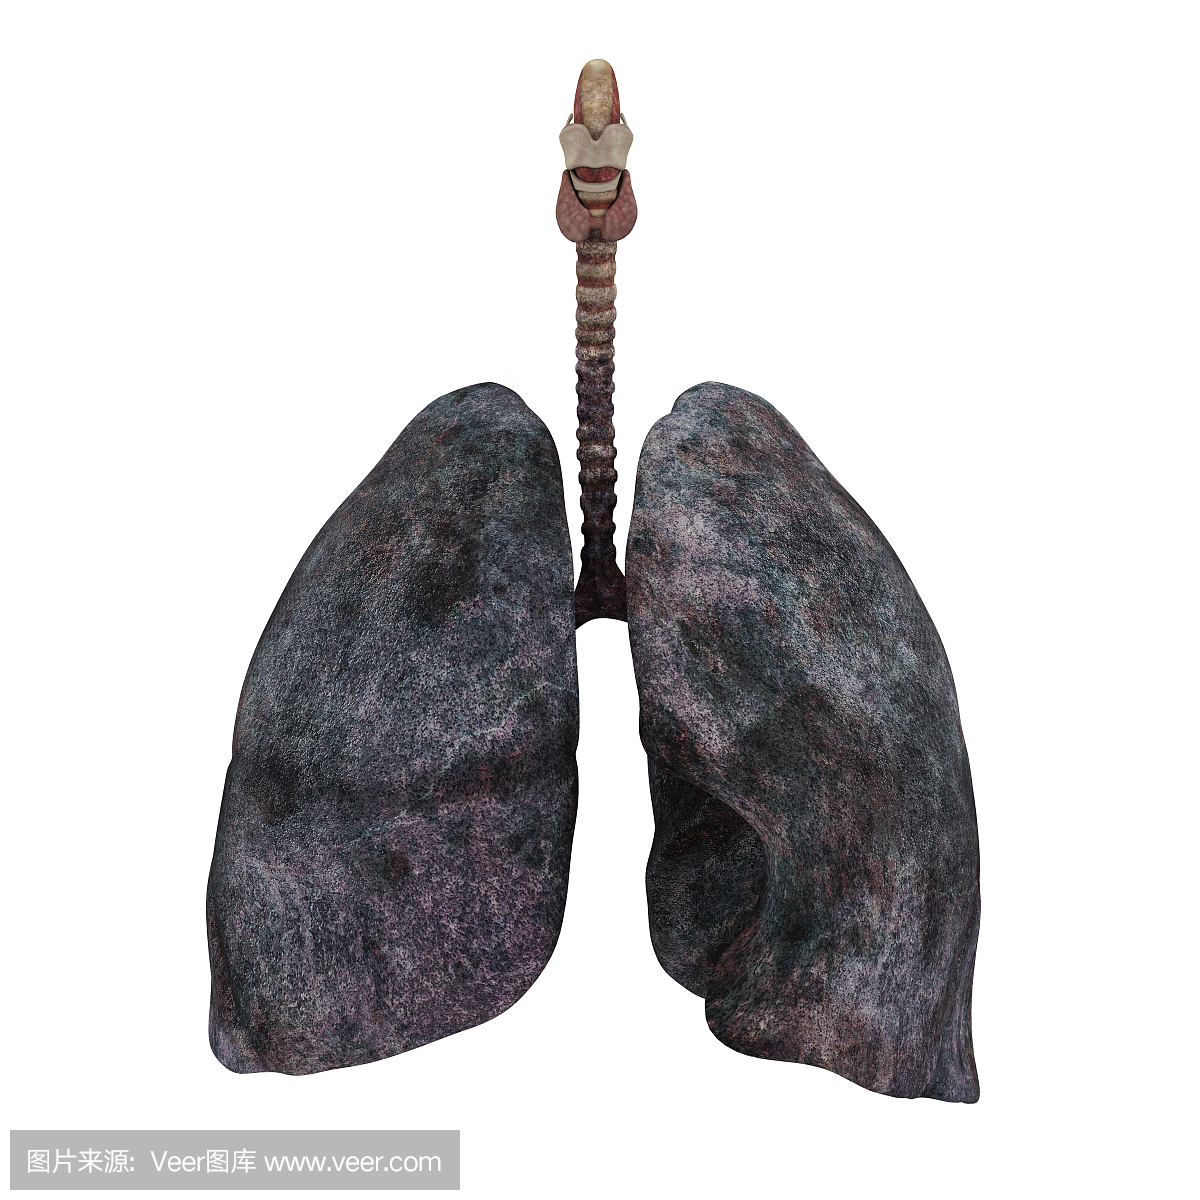 呼吸系统吸烟者的肺沉重 3D模型 $199 - .ma .max .upk .unitypackage .obj .c4d .fbx .usd - Free3D